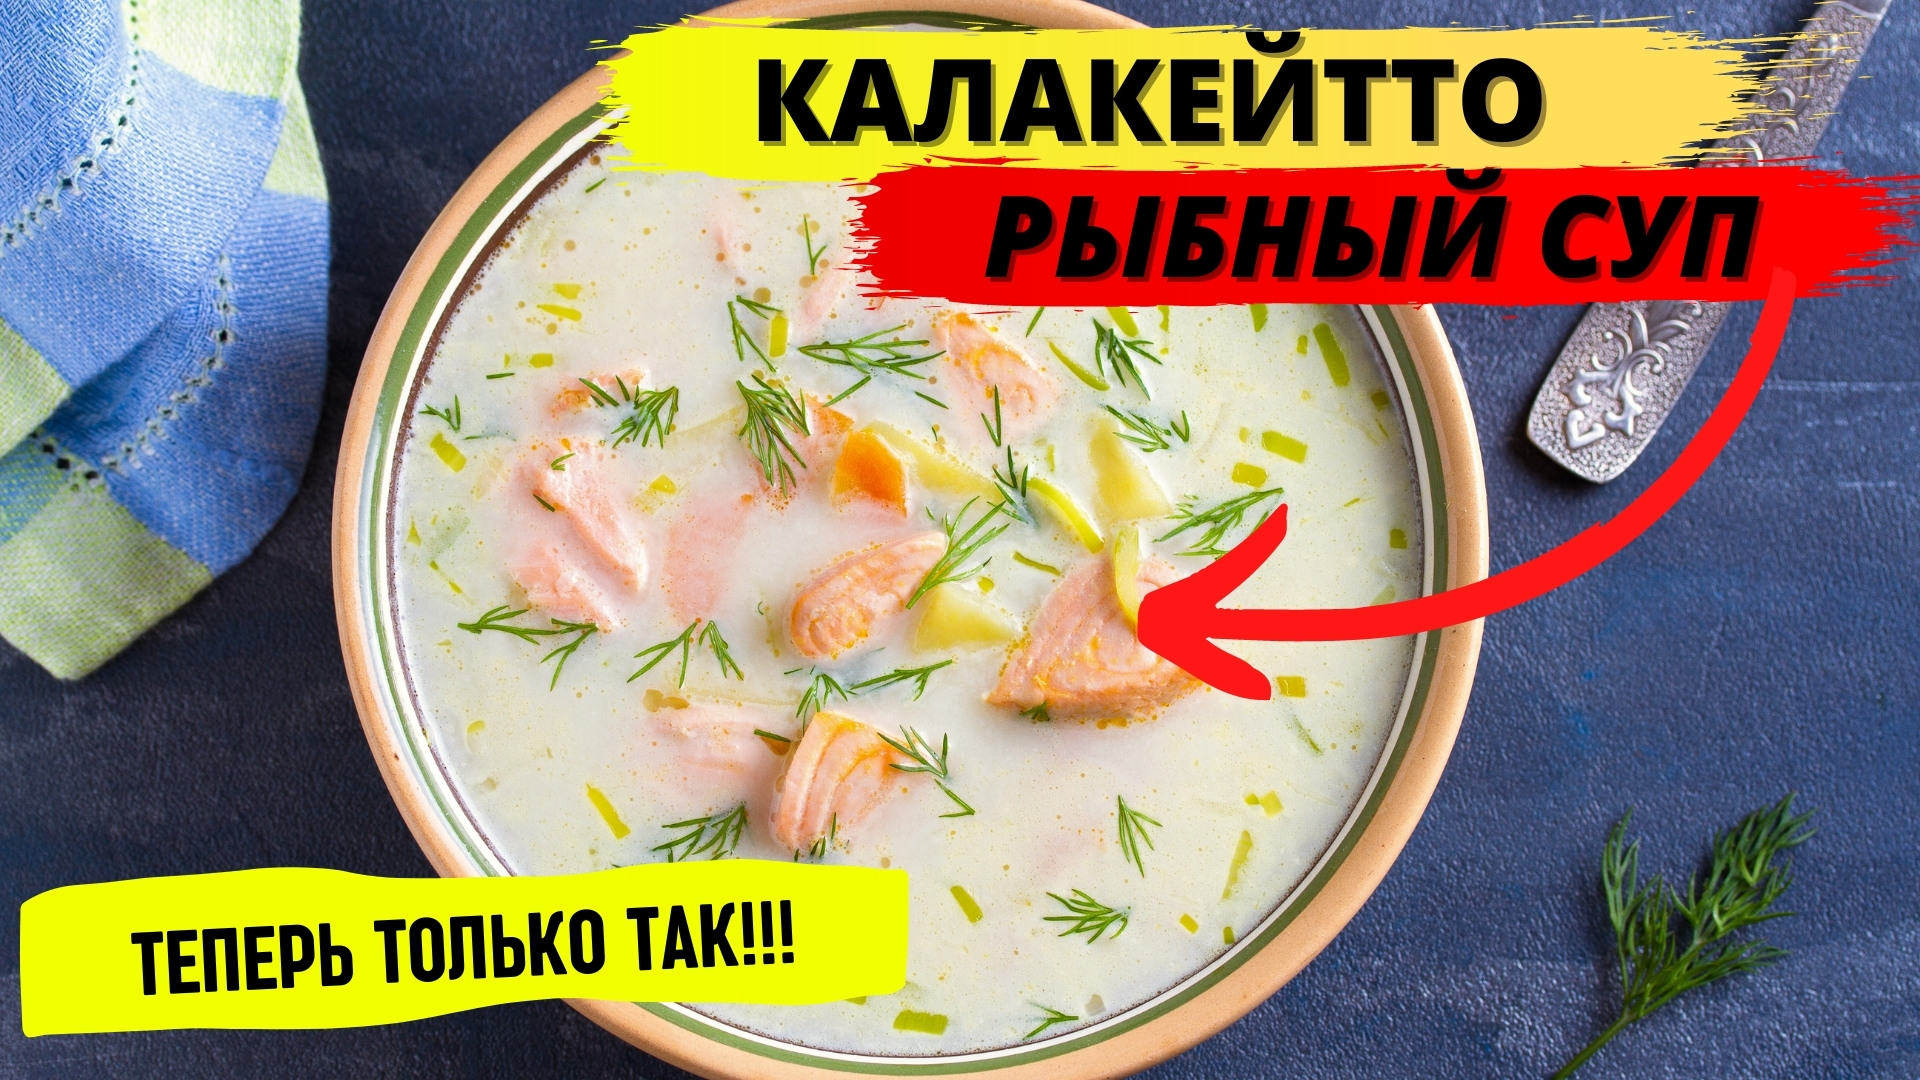 Калакейтто -- рыбный суп (Мурманск стайл)